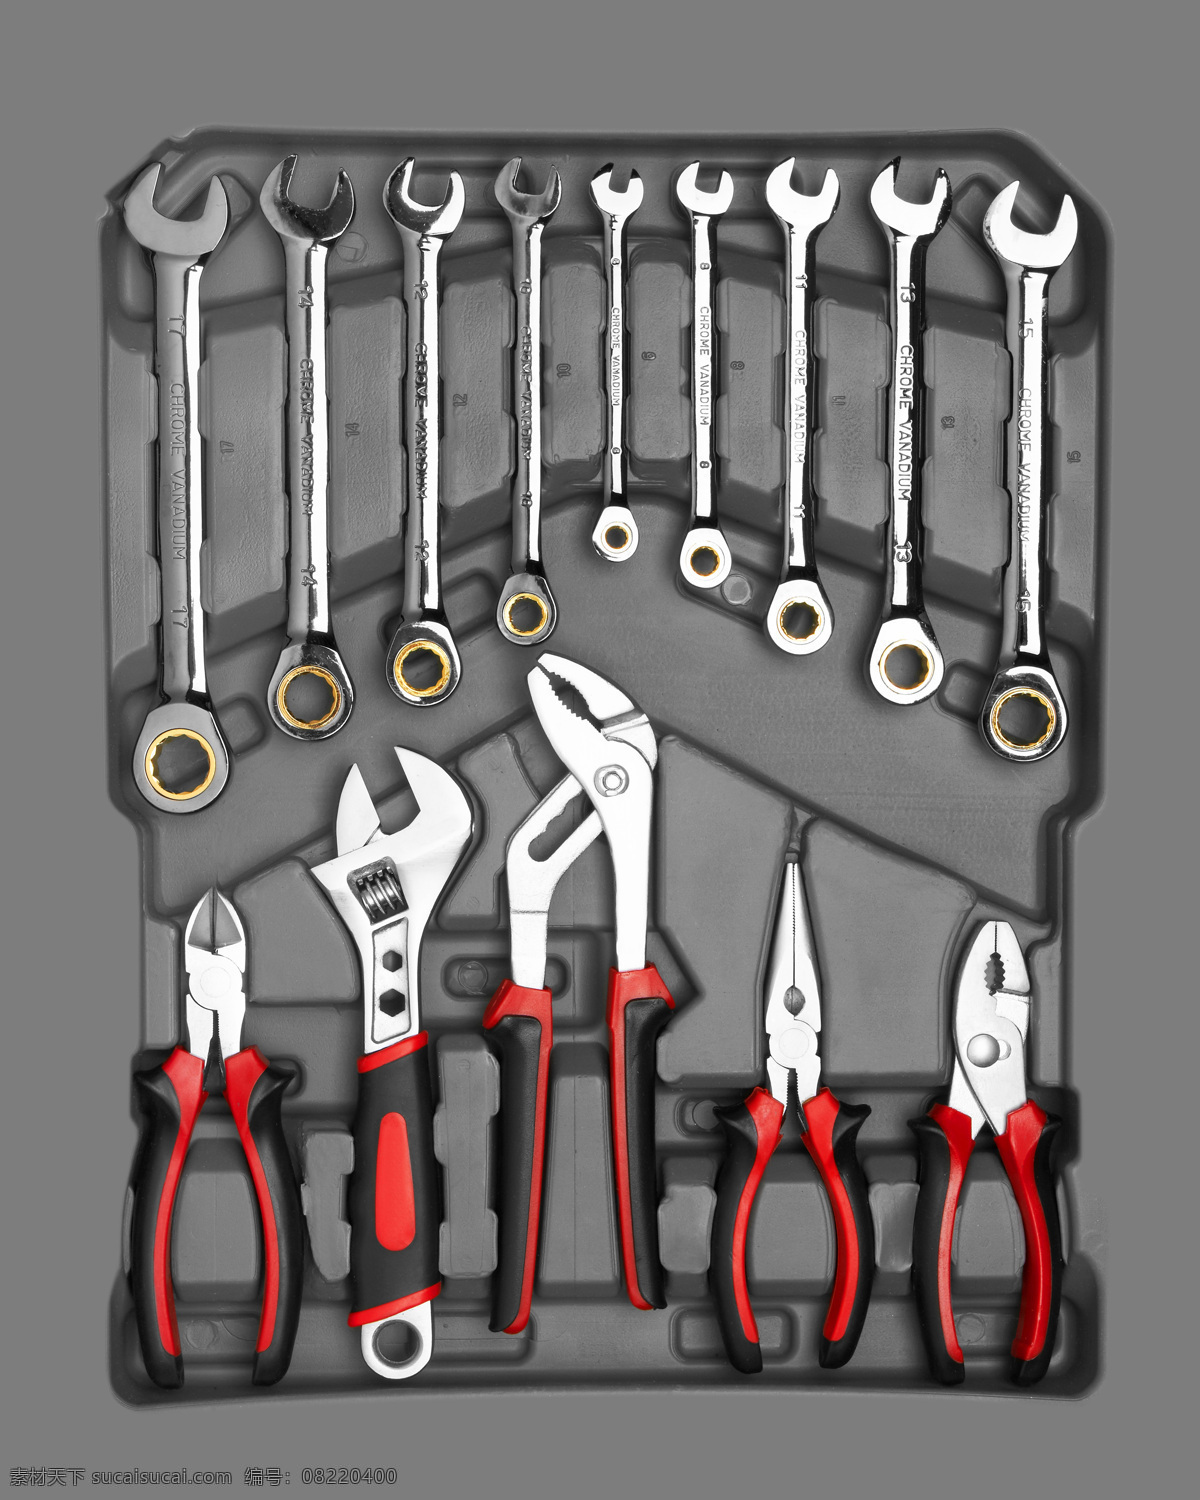 工具 盒 工具集锦 安装工具 修理工具 锤子 扳手 螺丝刀 工具盒 生活用品 生活百科